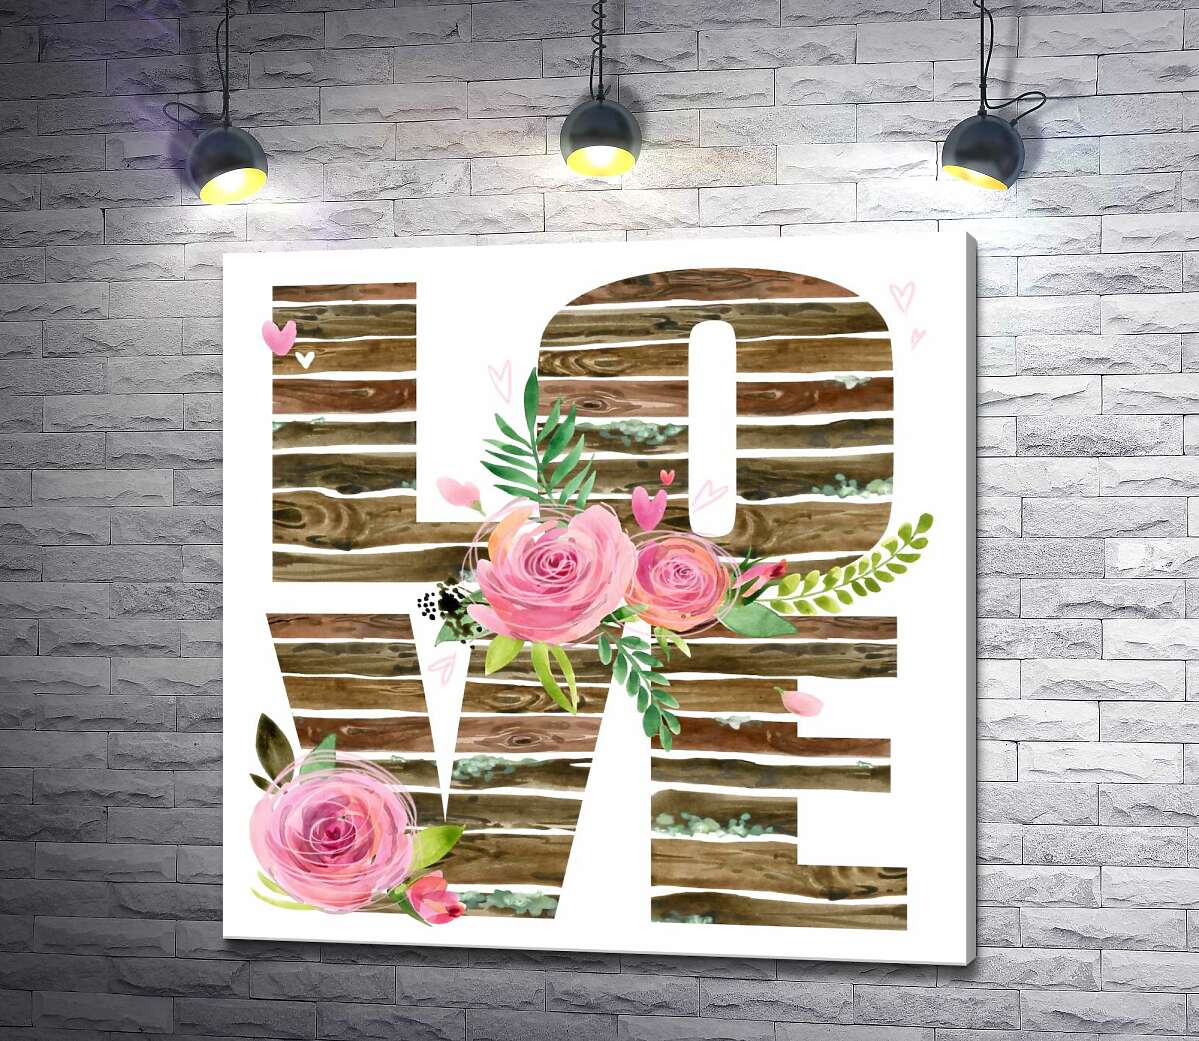 картина Деревянные буквы "love" украшены розами